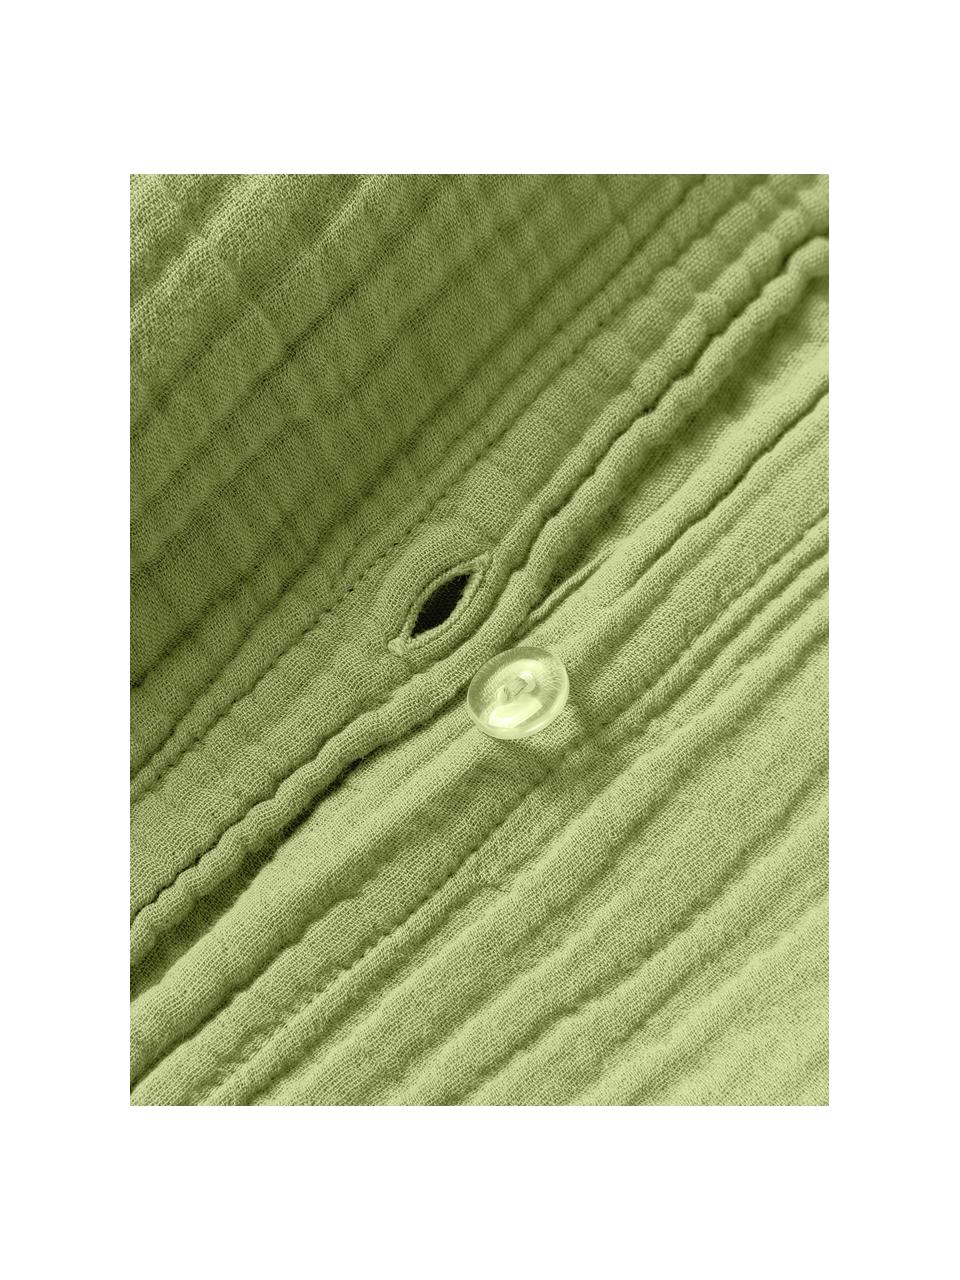 Poszwa na kołdrę z muślinu bawełnianego Odile, Oliwkowy zielony, S 200 x D 200 cm